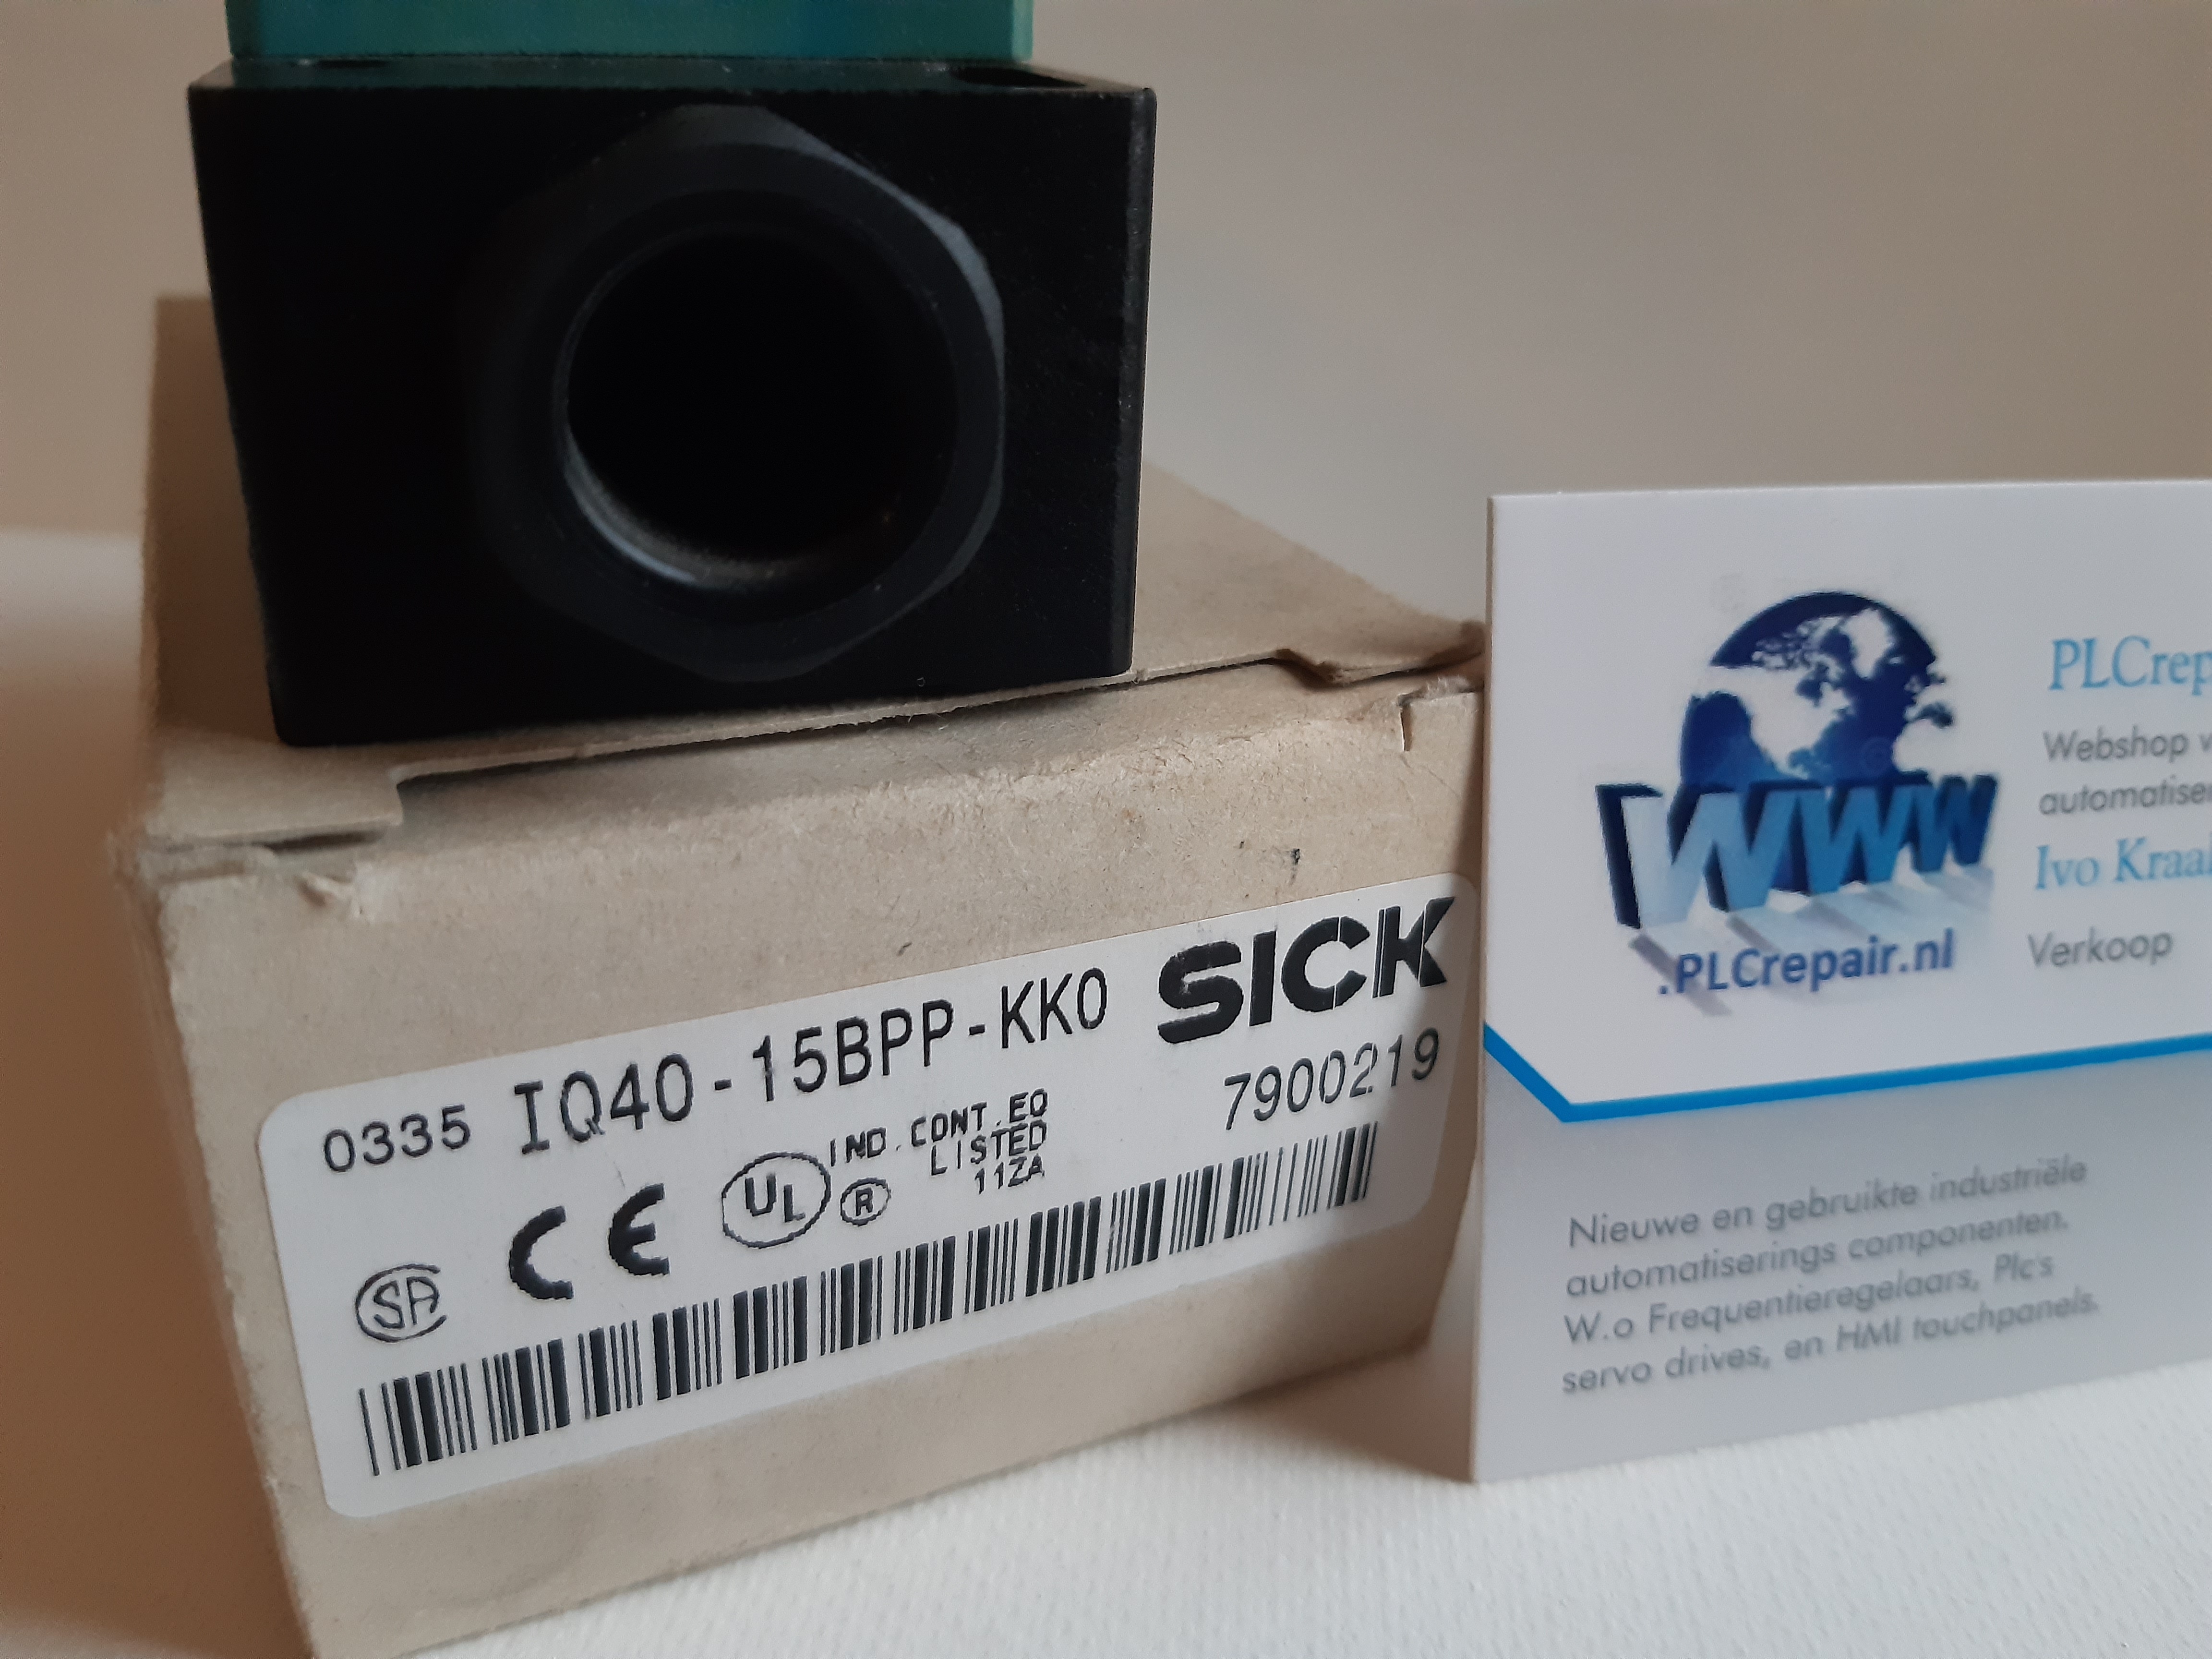 IQ40-15BPP-KK0 7900219 Sick sensor